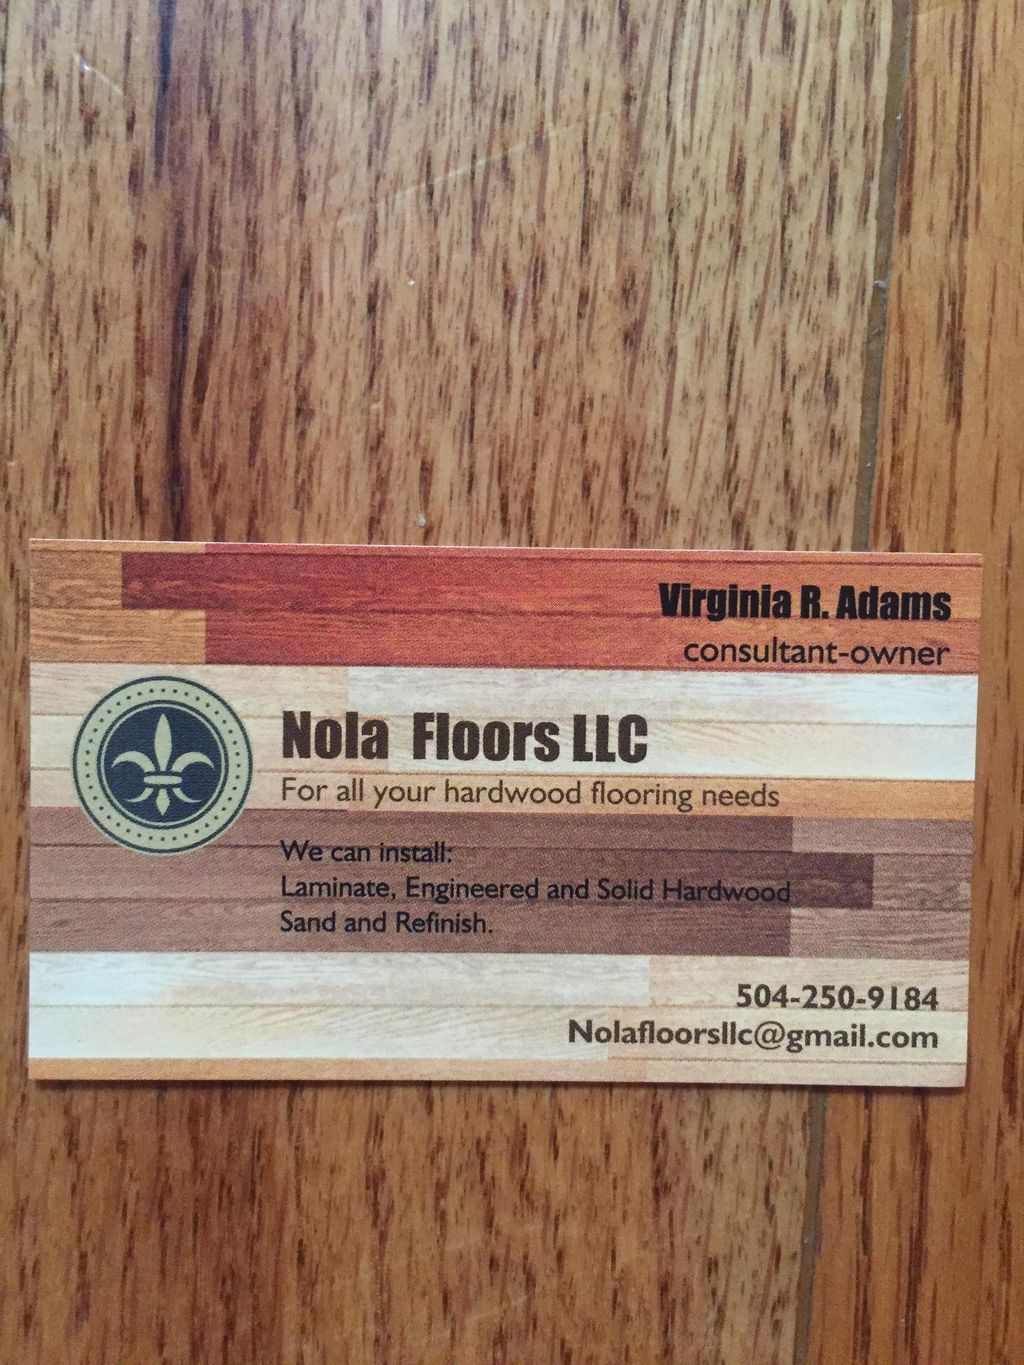 Nola Floors LLC